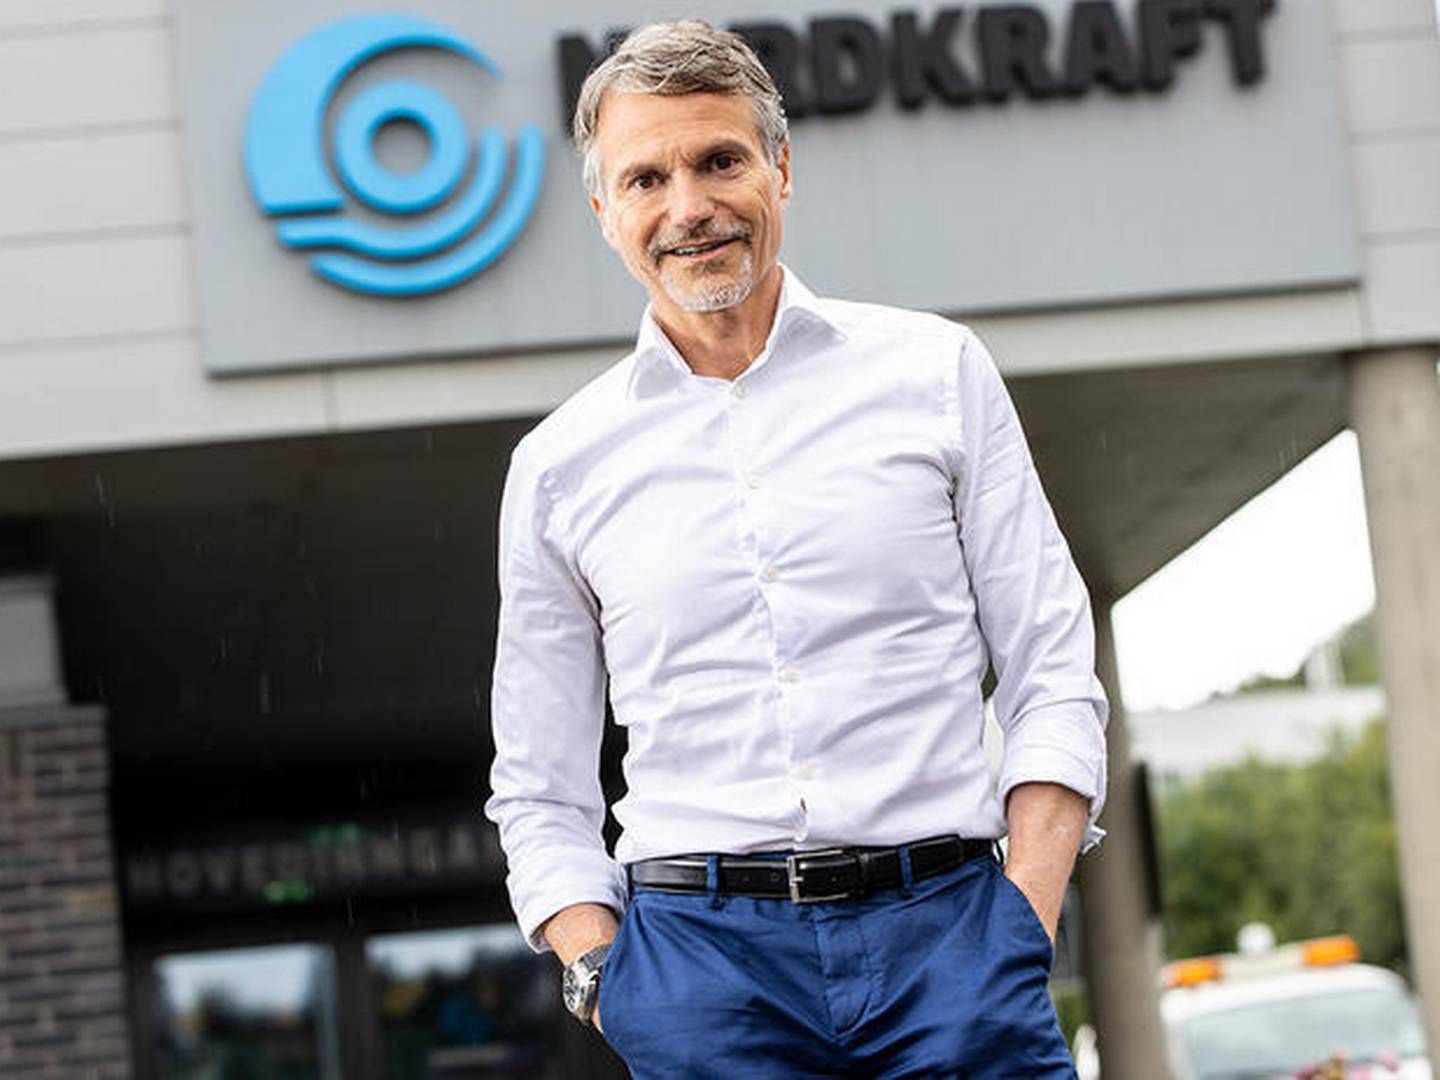 FOR RASKT: Administrerende direktør Eirik Frantzen i Nordkraft mener det grønne skiftet kommer før man har alle spørsmålene besvart. | Foto: Michael Ulriksen/Nordkraft